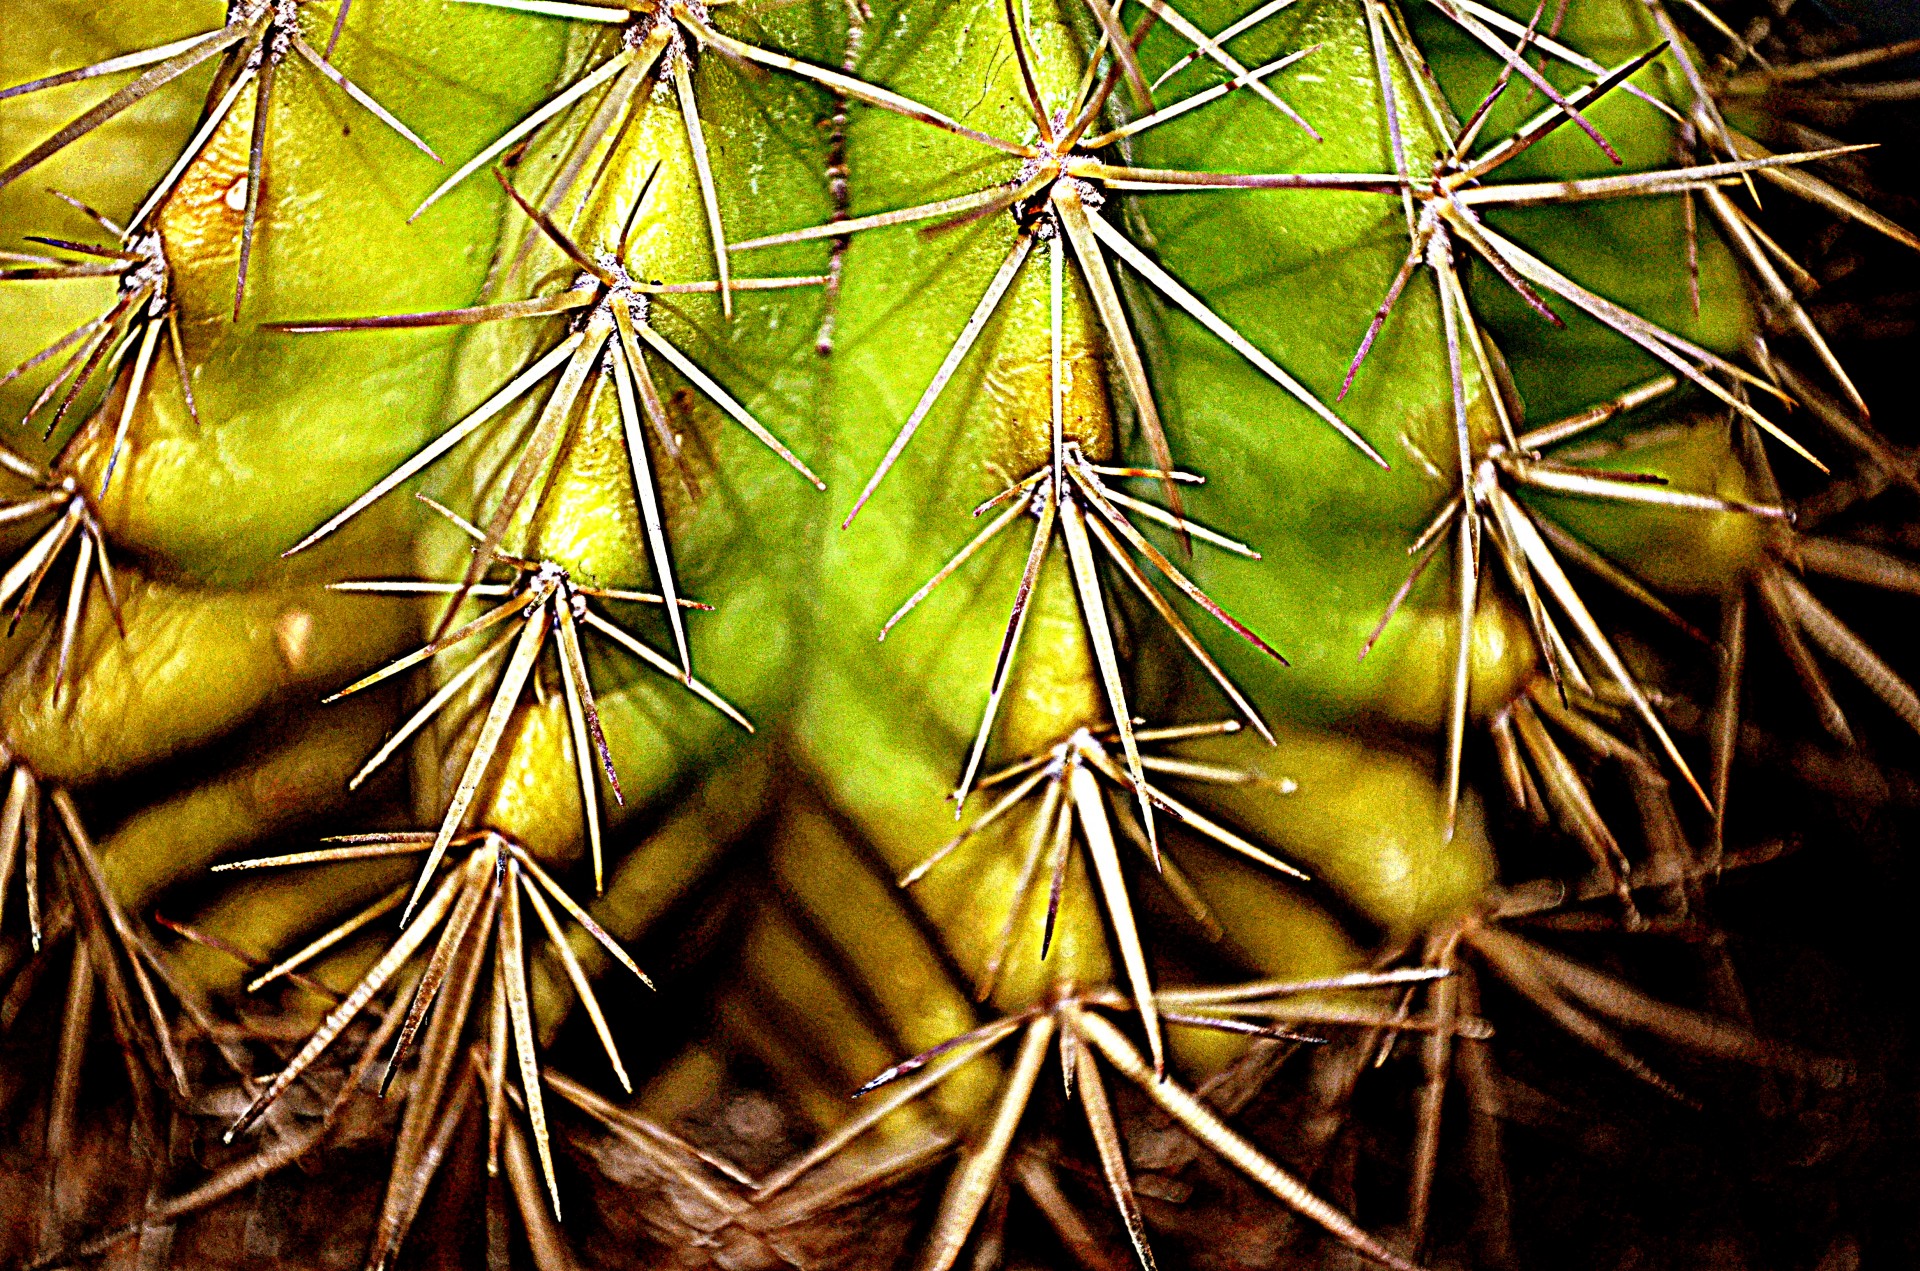 cactus plant needles free photo